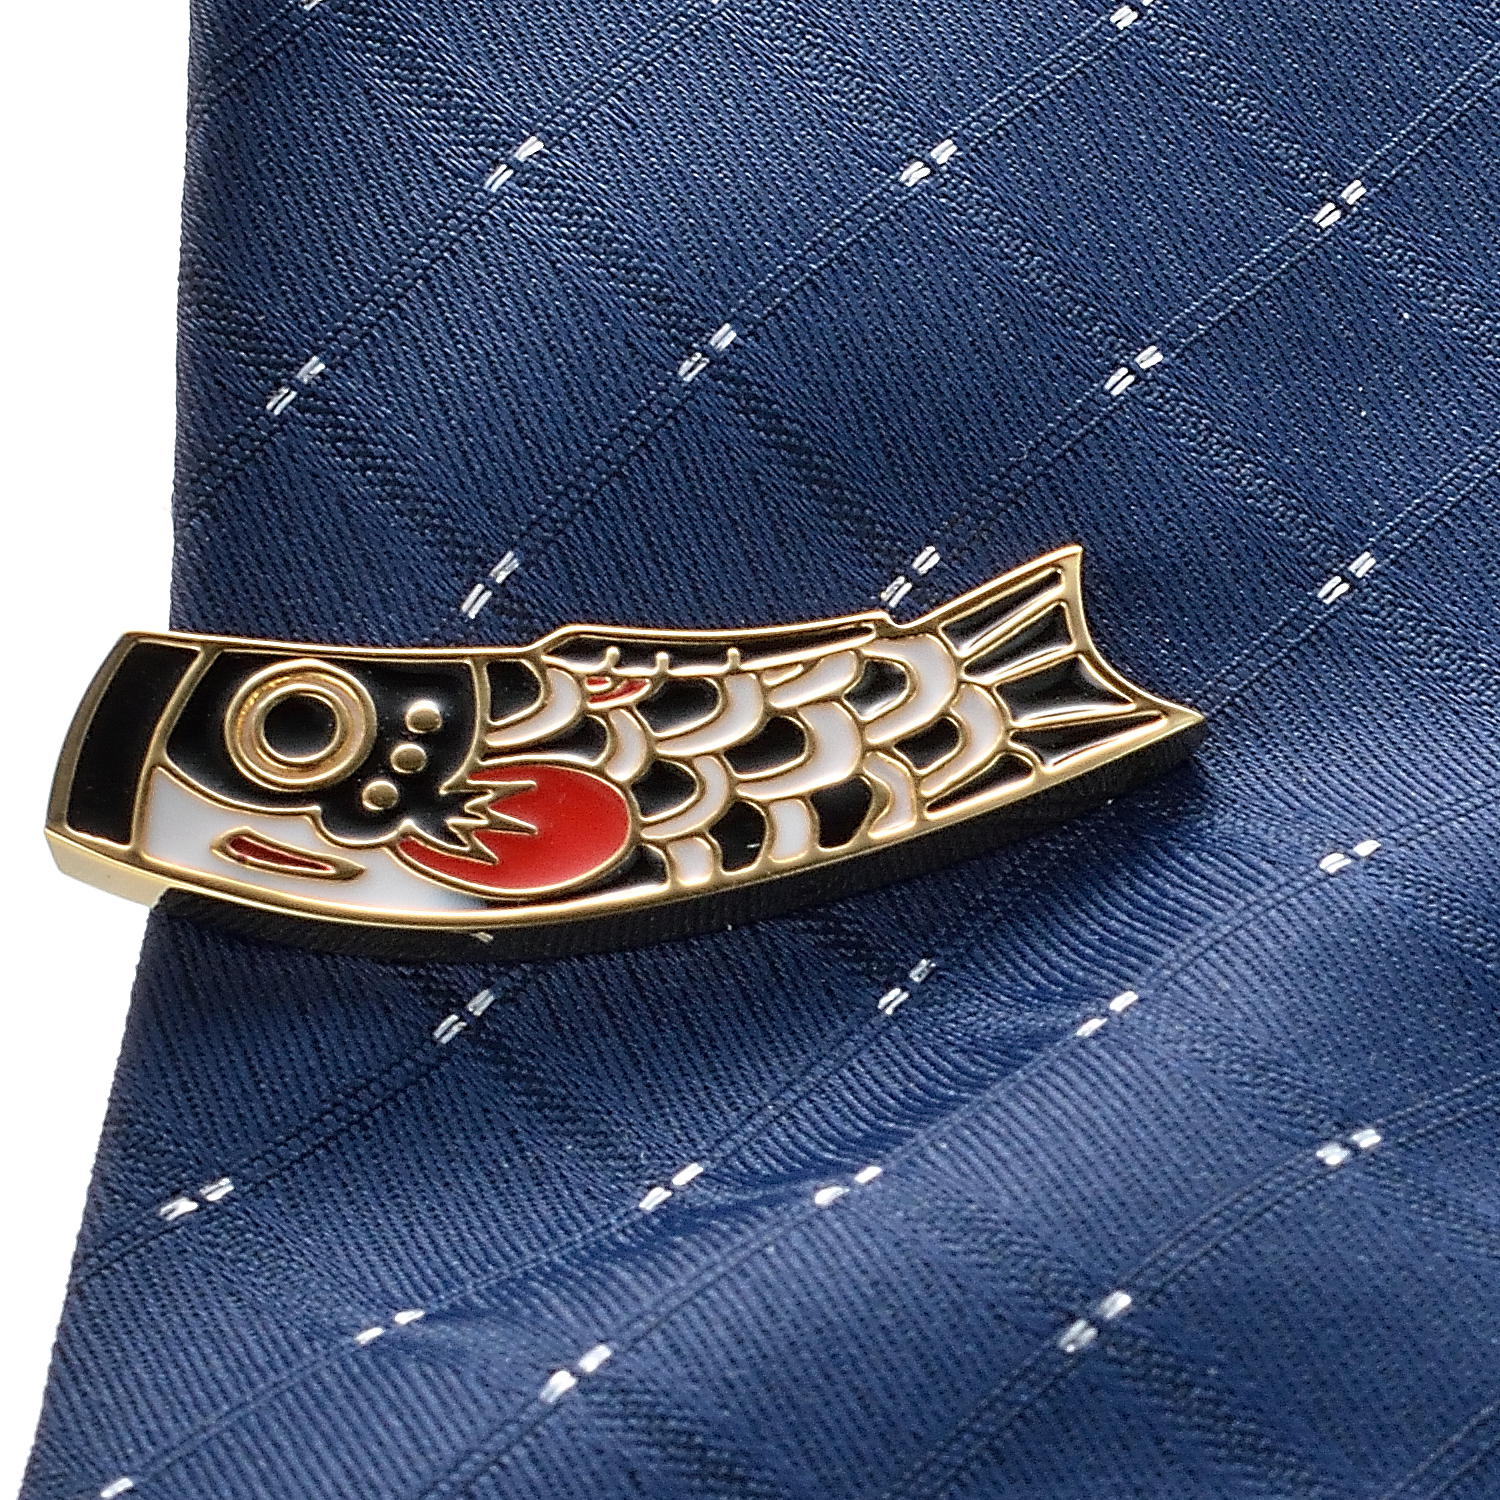 Ihrfs Red Goldfish Krawatte Clip Fashion Männer Gold plattiert 18K Design einzigartige Jubiläumsurlaubs Geburtstag Geschenk